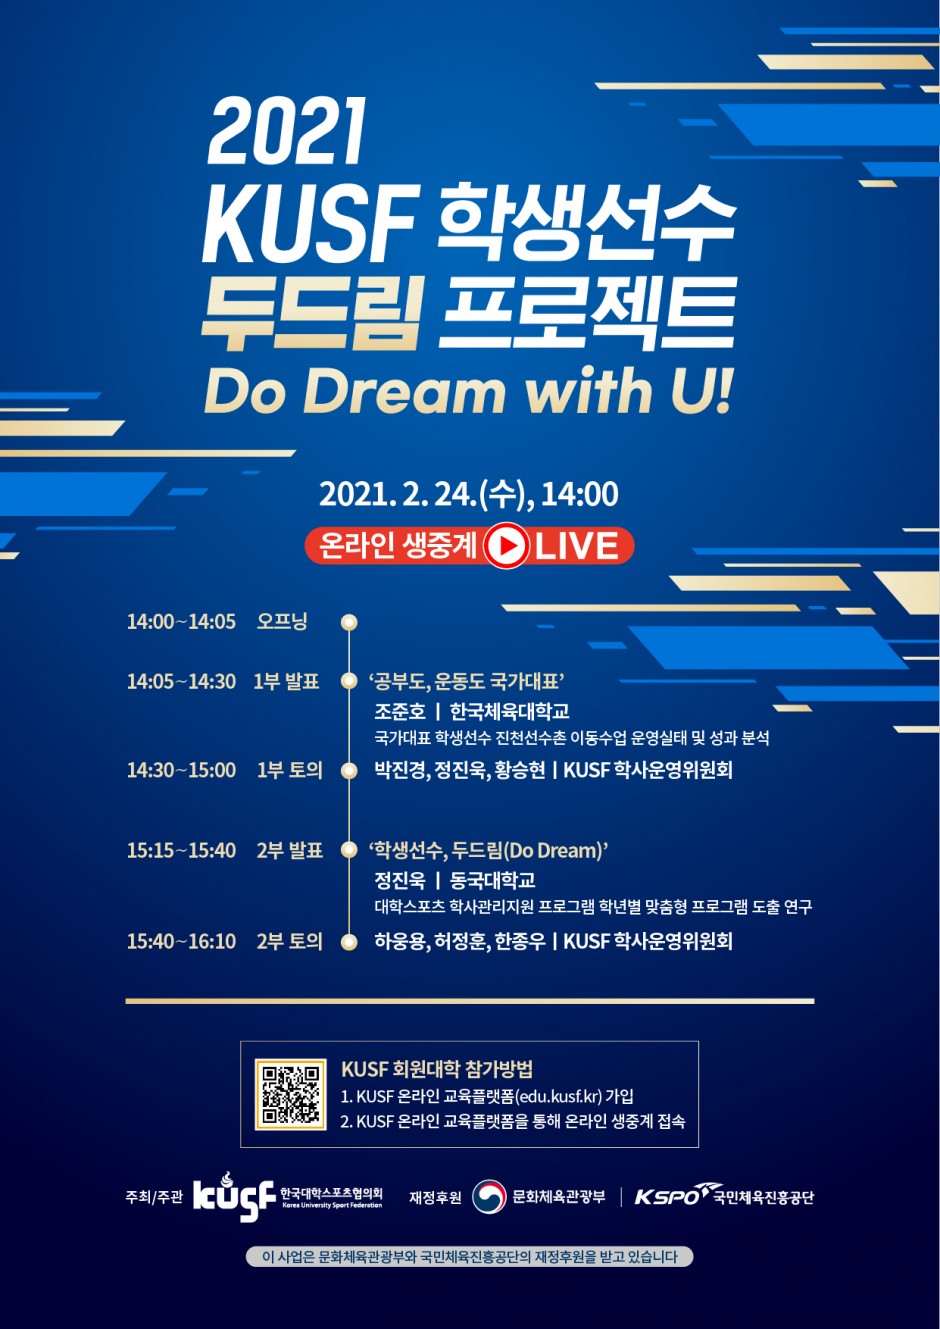 붙임3. 2021 KUSF 학생선수 두드림 프로젝트 홍보 포스터